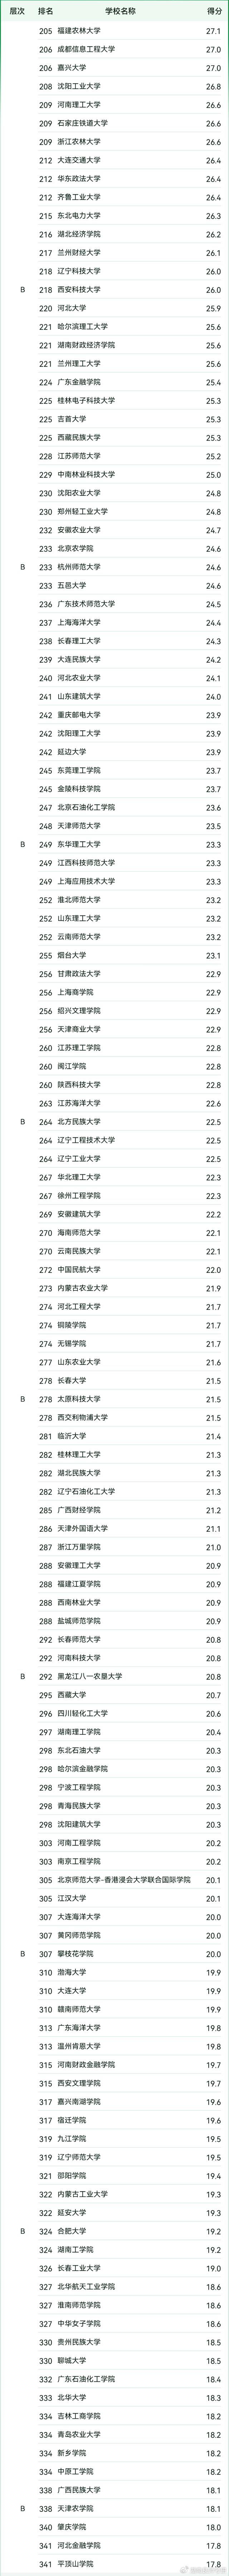 情况,a类的院校共有4所,分别是:湖南大学排名24名,中南大学排名33名